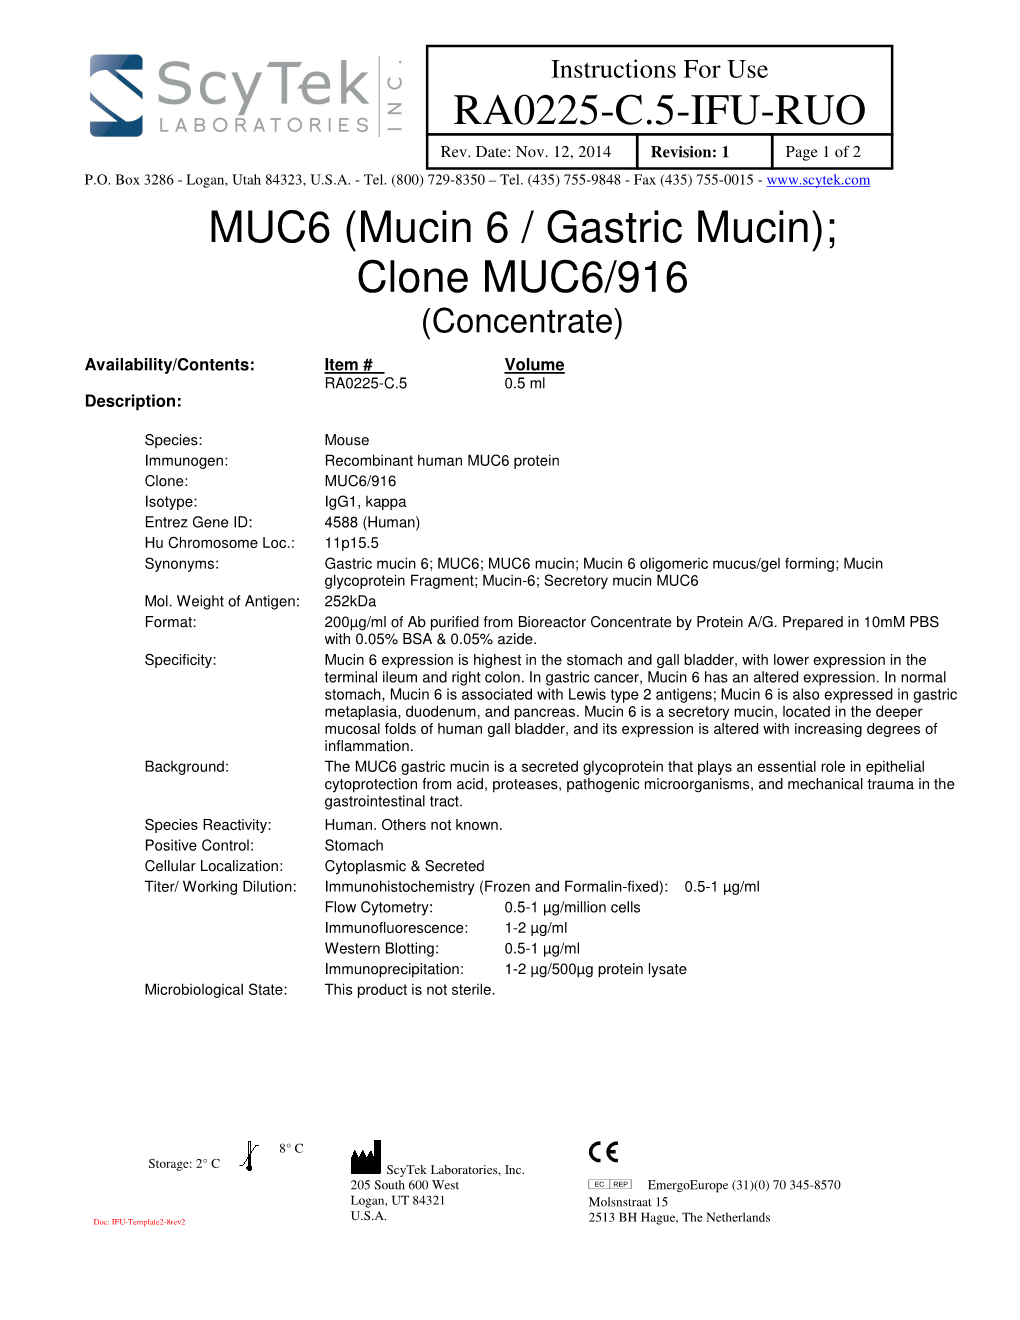 RA0225-C.5-IFU-RUO MUC6 (Mucin 6 / Gastric Mucin); Clone MUC6/916